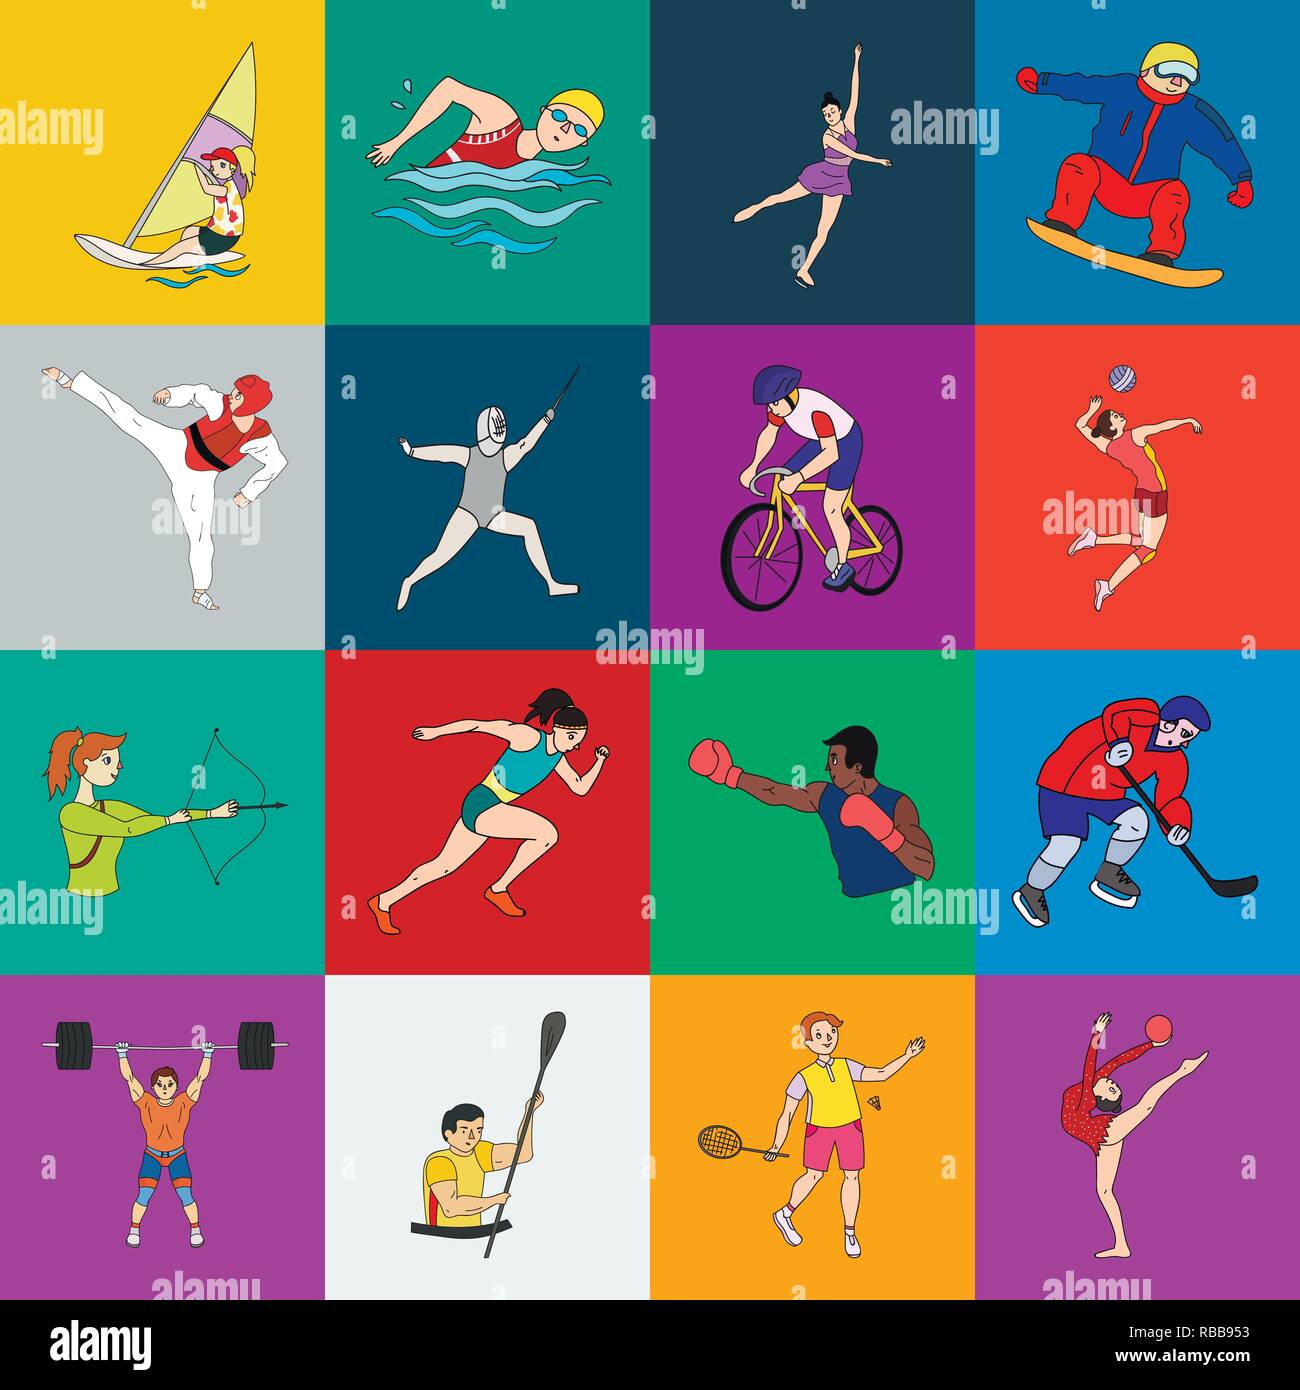 Various kinds of sport. Виды спорта рисунки. Иллюстрации с разными видами спорта. Все спортивные виды спорта. Летние виды спорта.